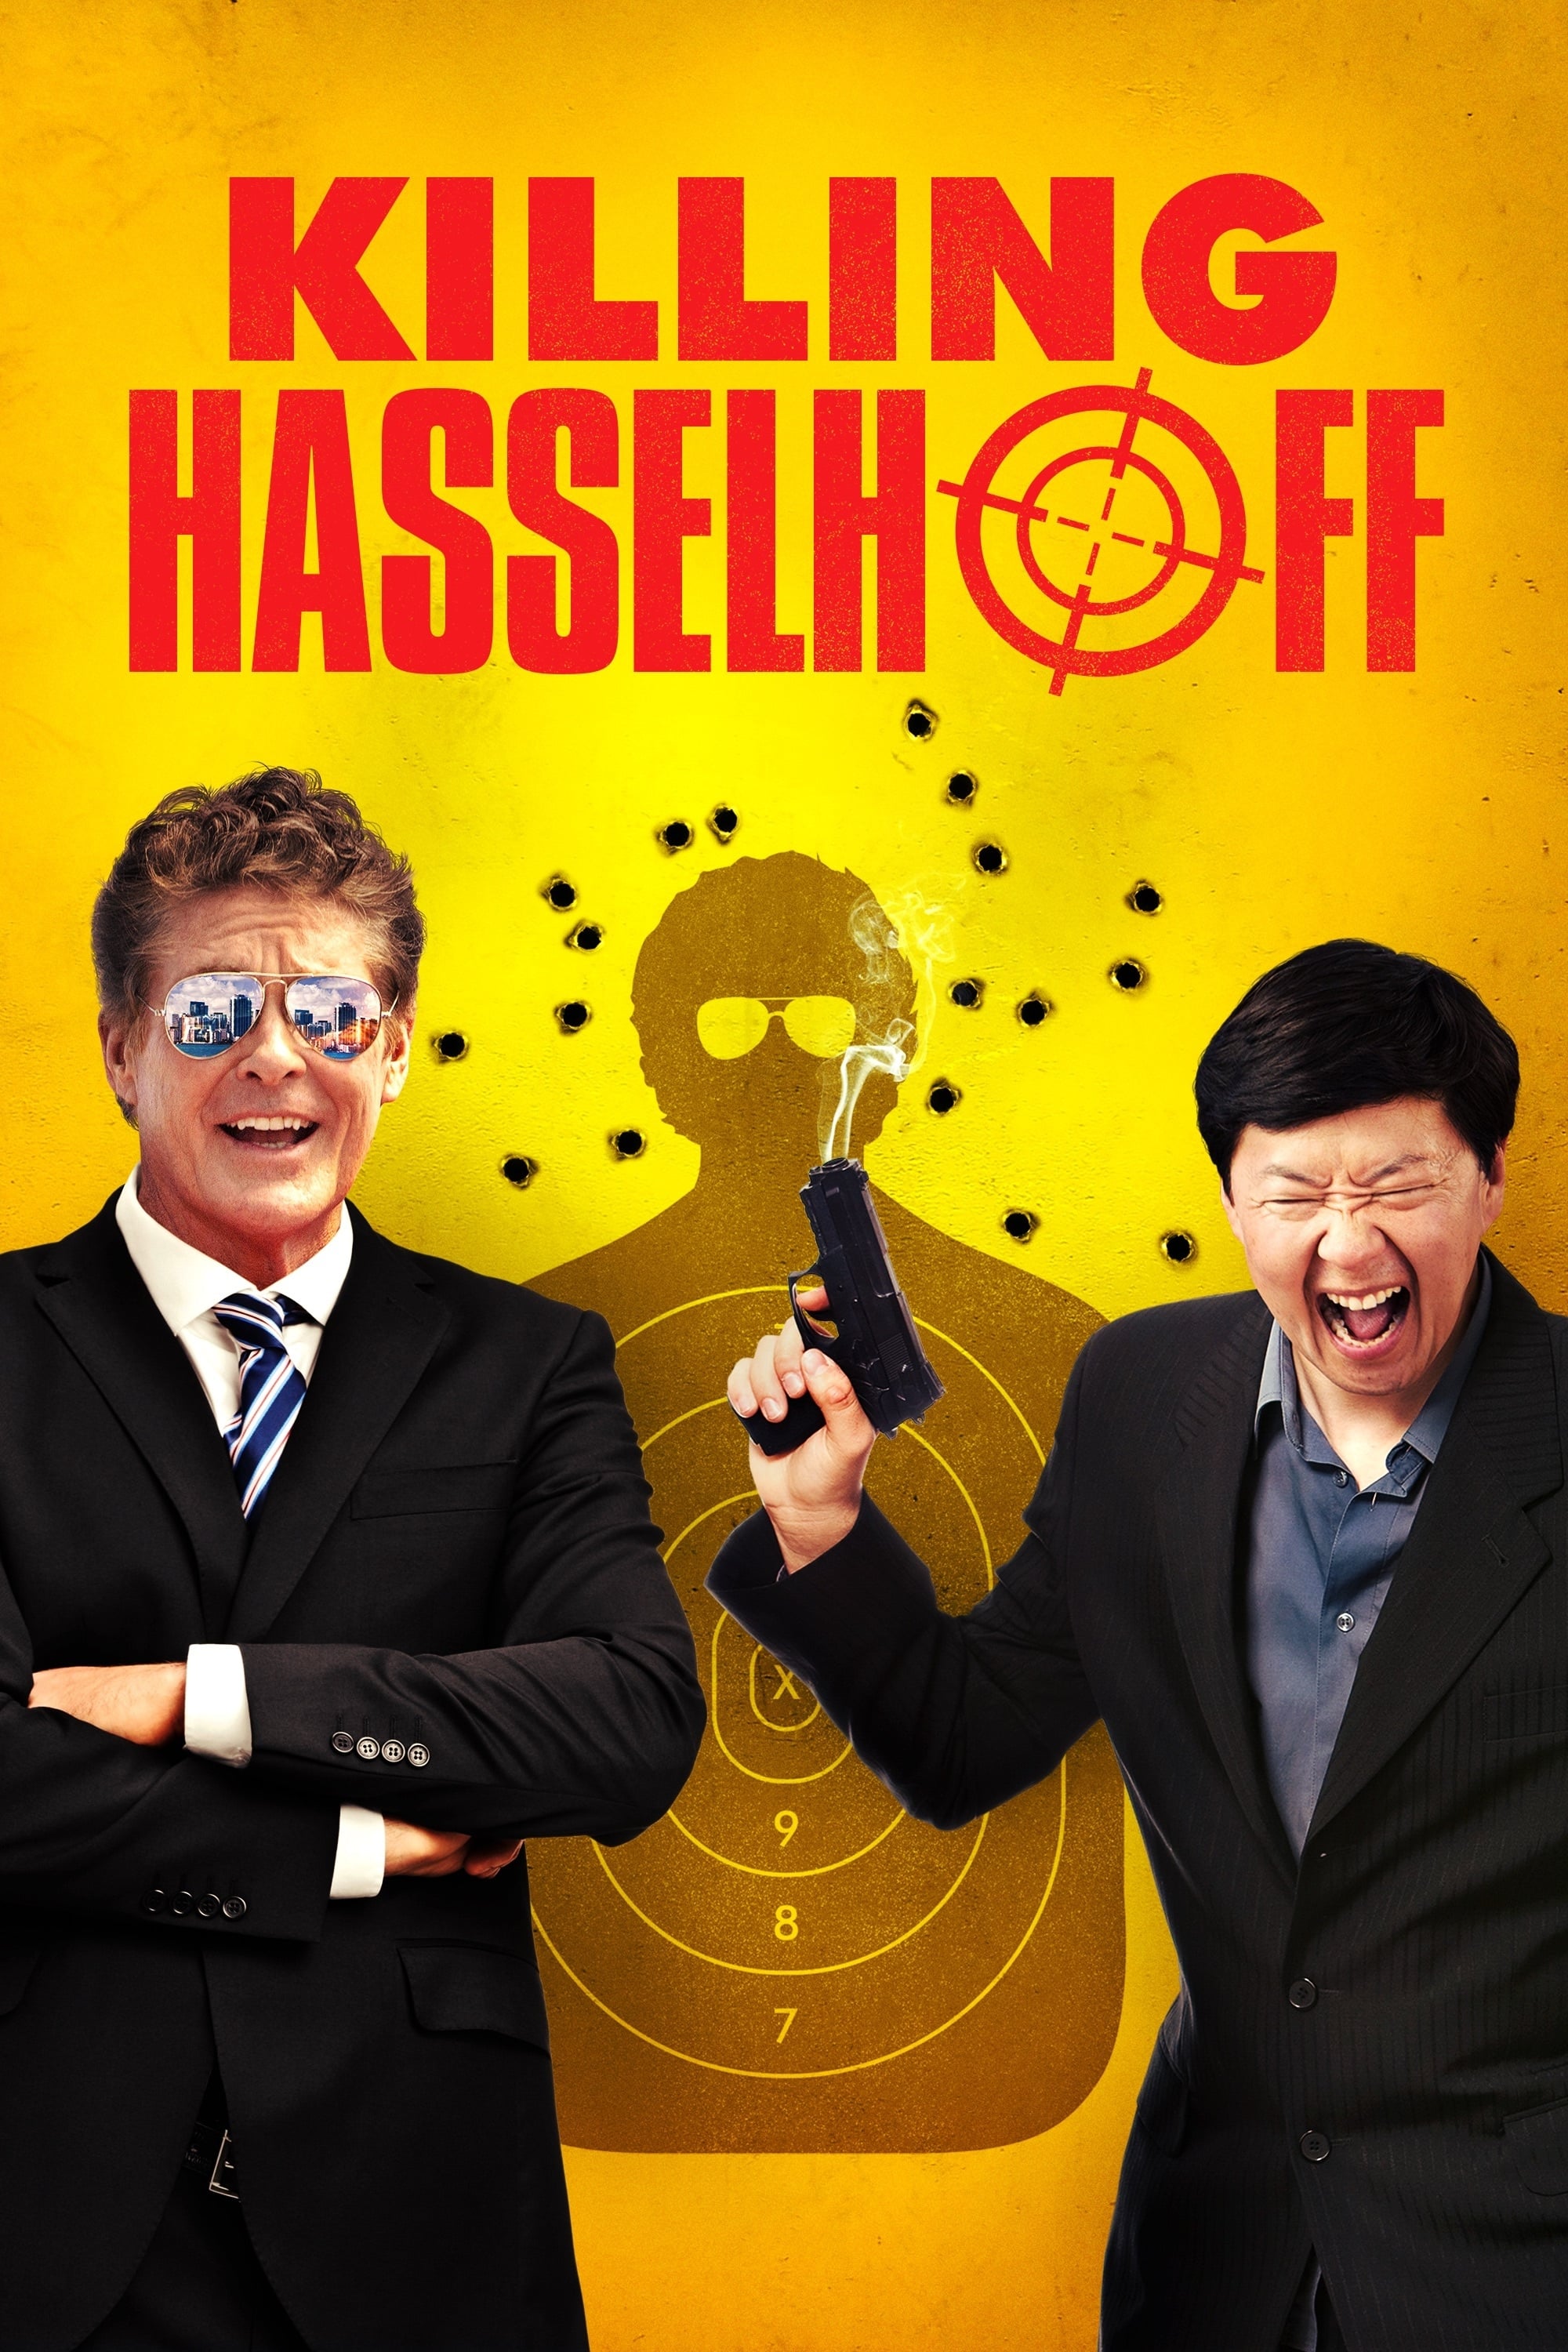 Hasselhoff'u Öldürmek